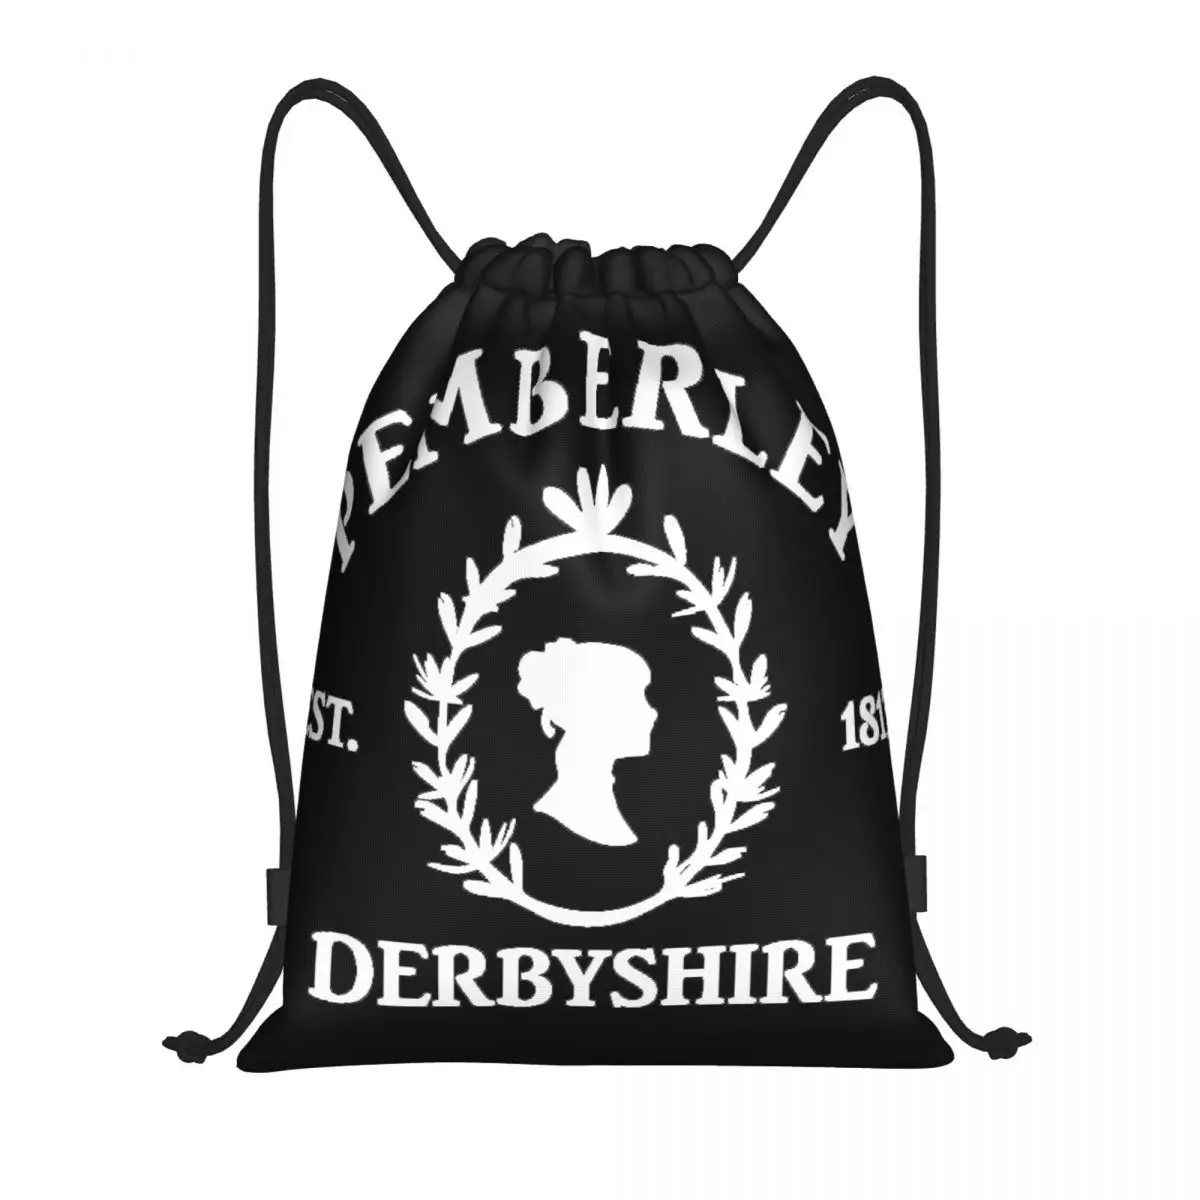 

Pemberley 1813 Pride And Prejudice Jane Austen Art Print Multi-function Portable Drawstring Bags Sports Bag Book Bag